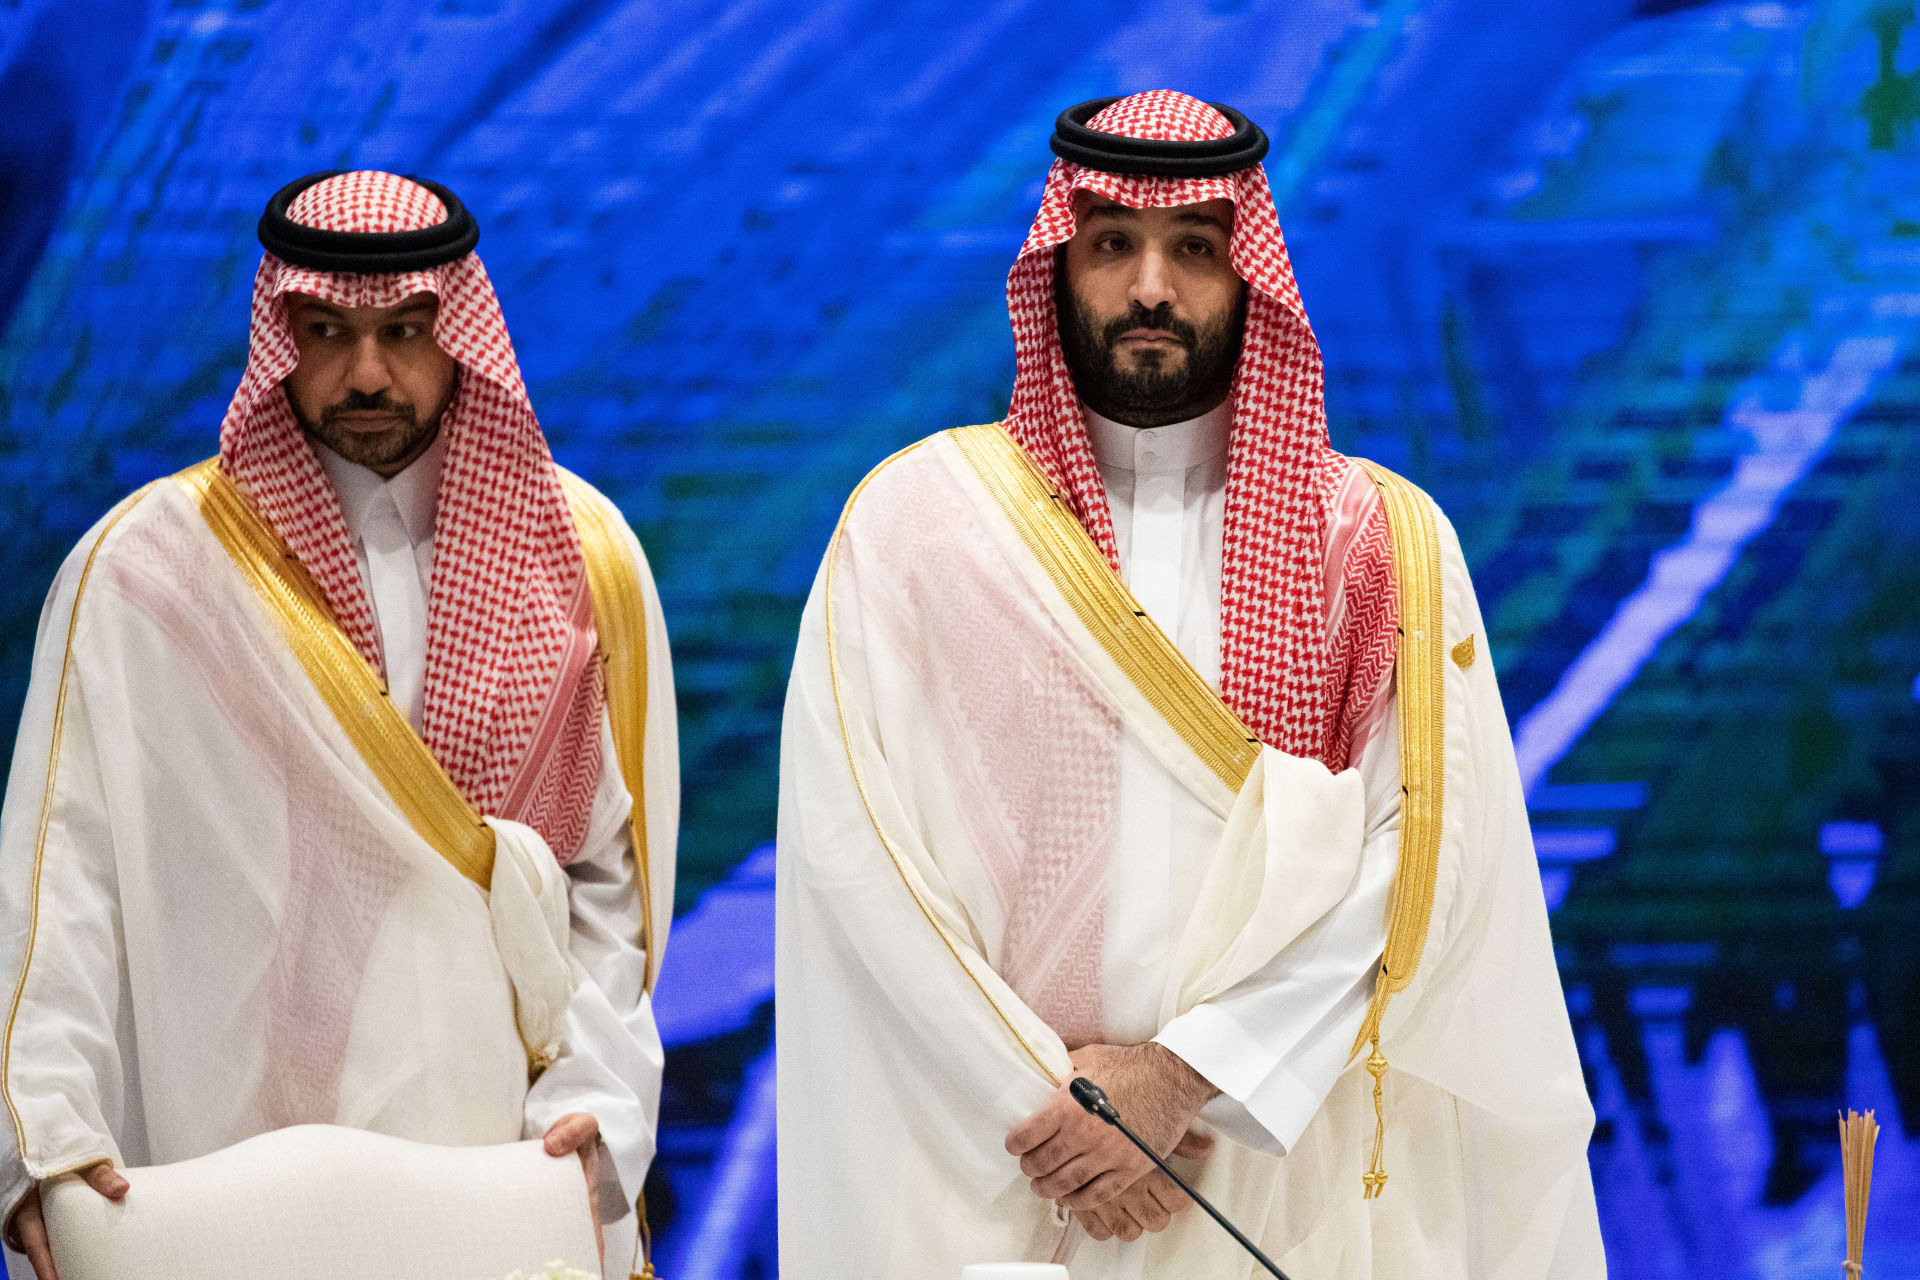 وزير سعودي: محمد بن سلمان كان شجاعا صادقا قويا ومخلصا في إيصال رسالة الوسطية